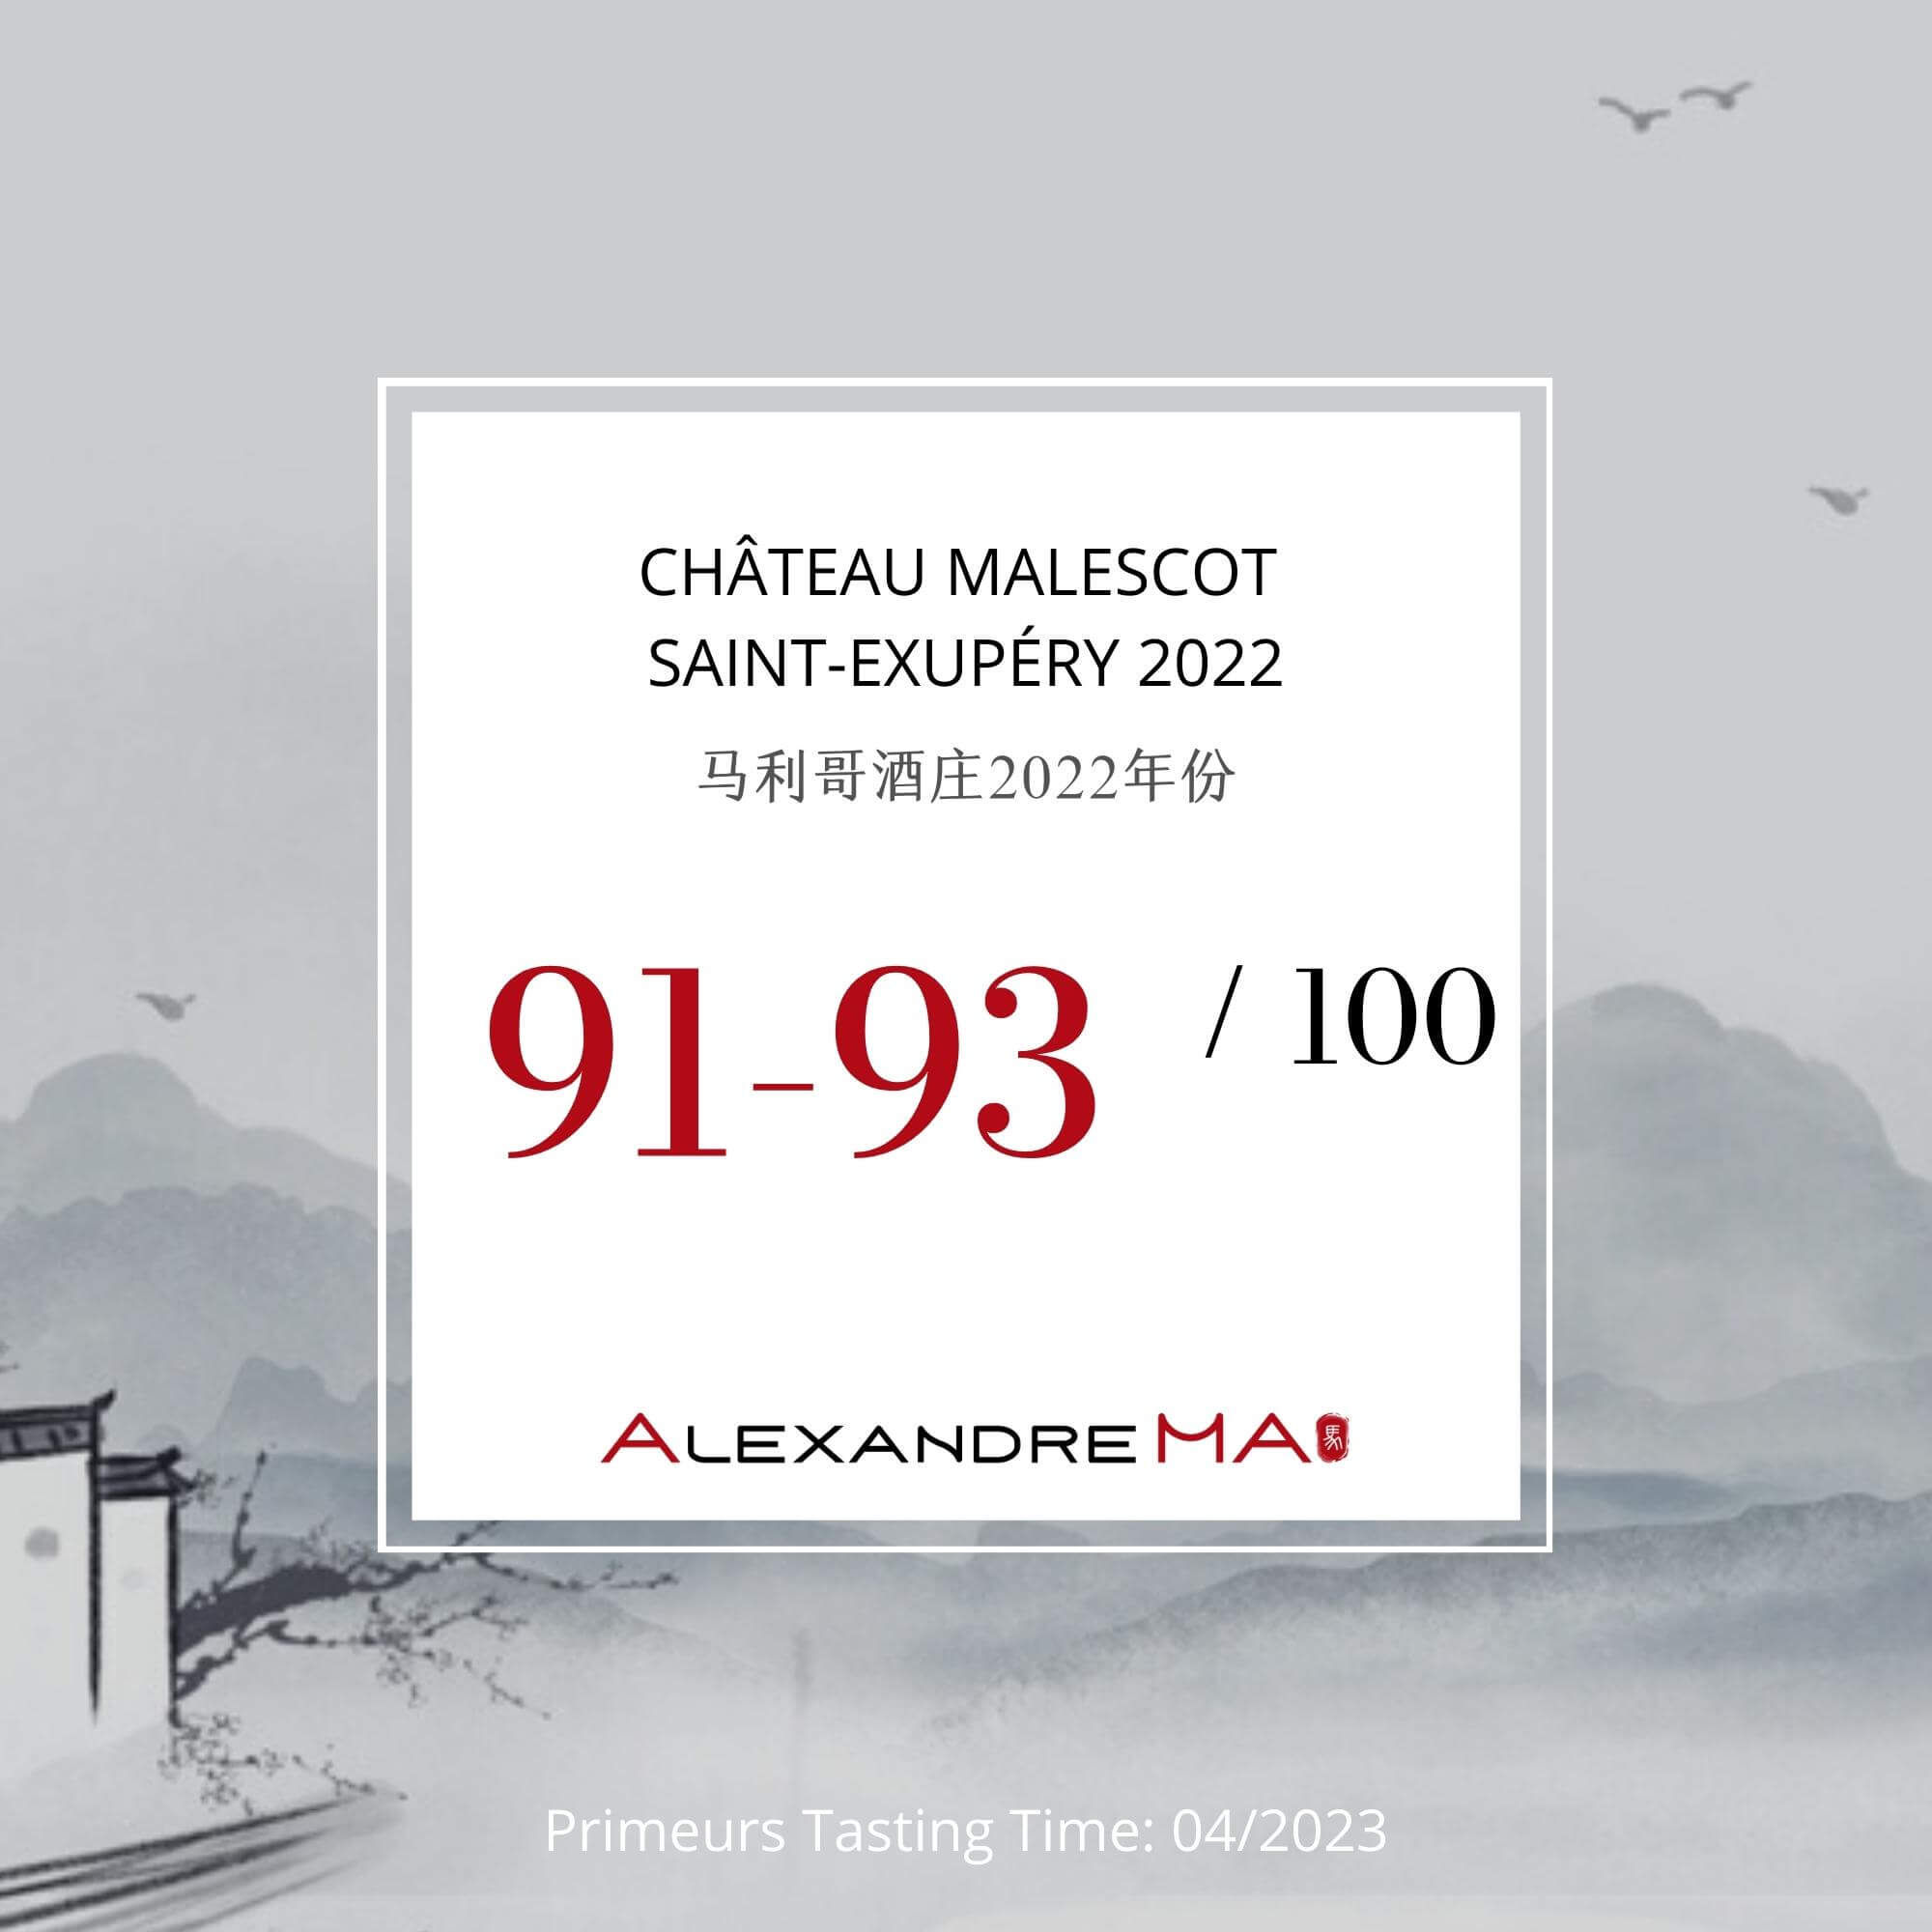 Château Malescot Saint-Exupéry 2022 Primeurs - Alexandre MA